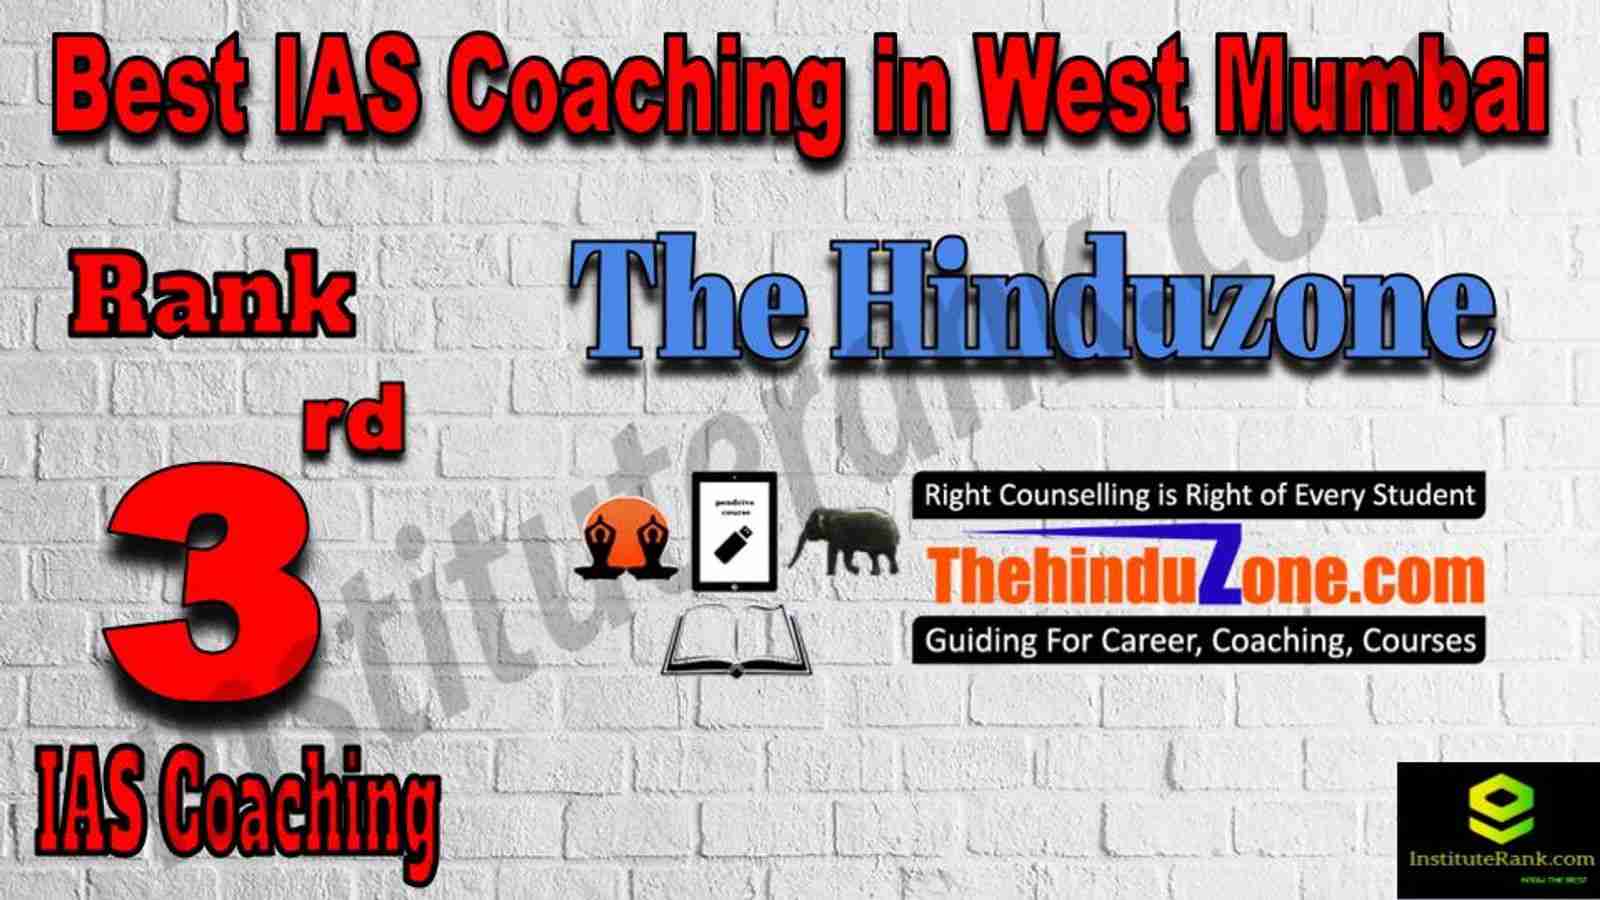 3rd Best IAS Coaching in West Mumbai